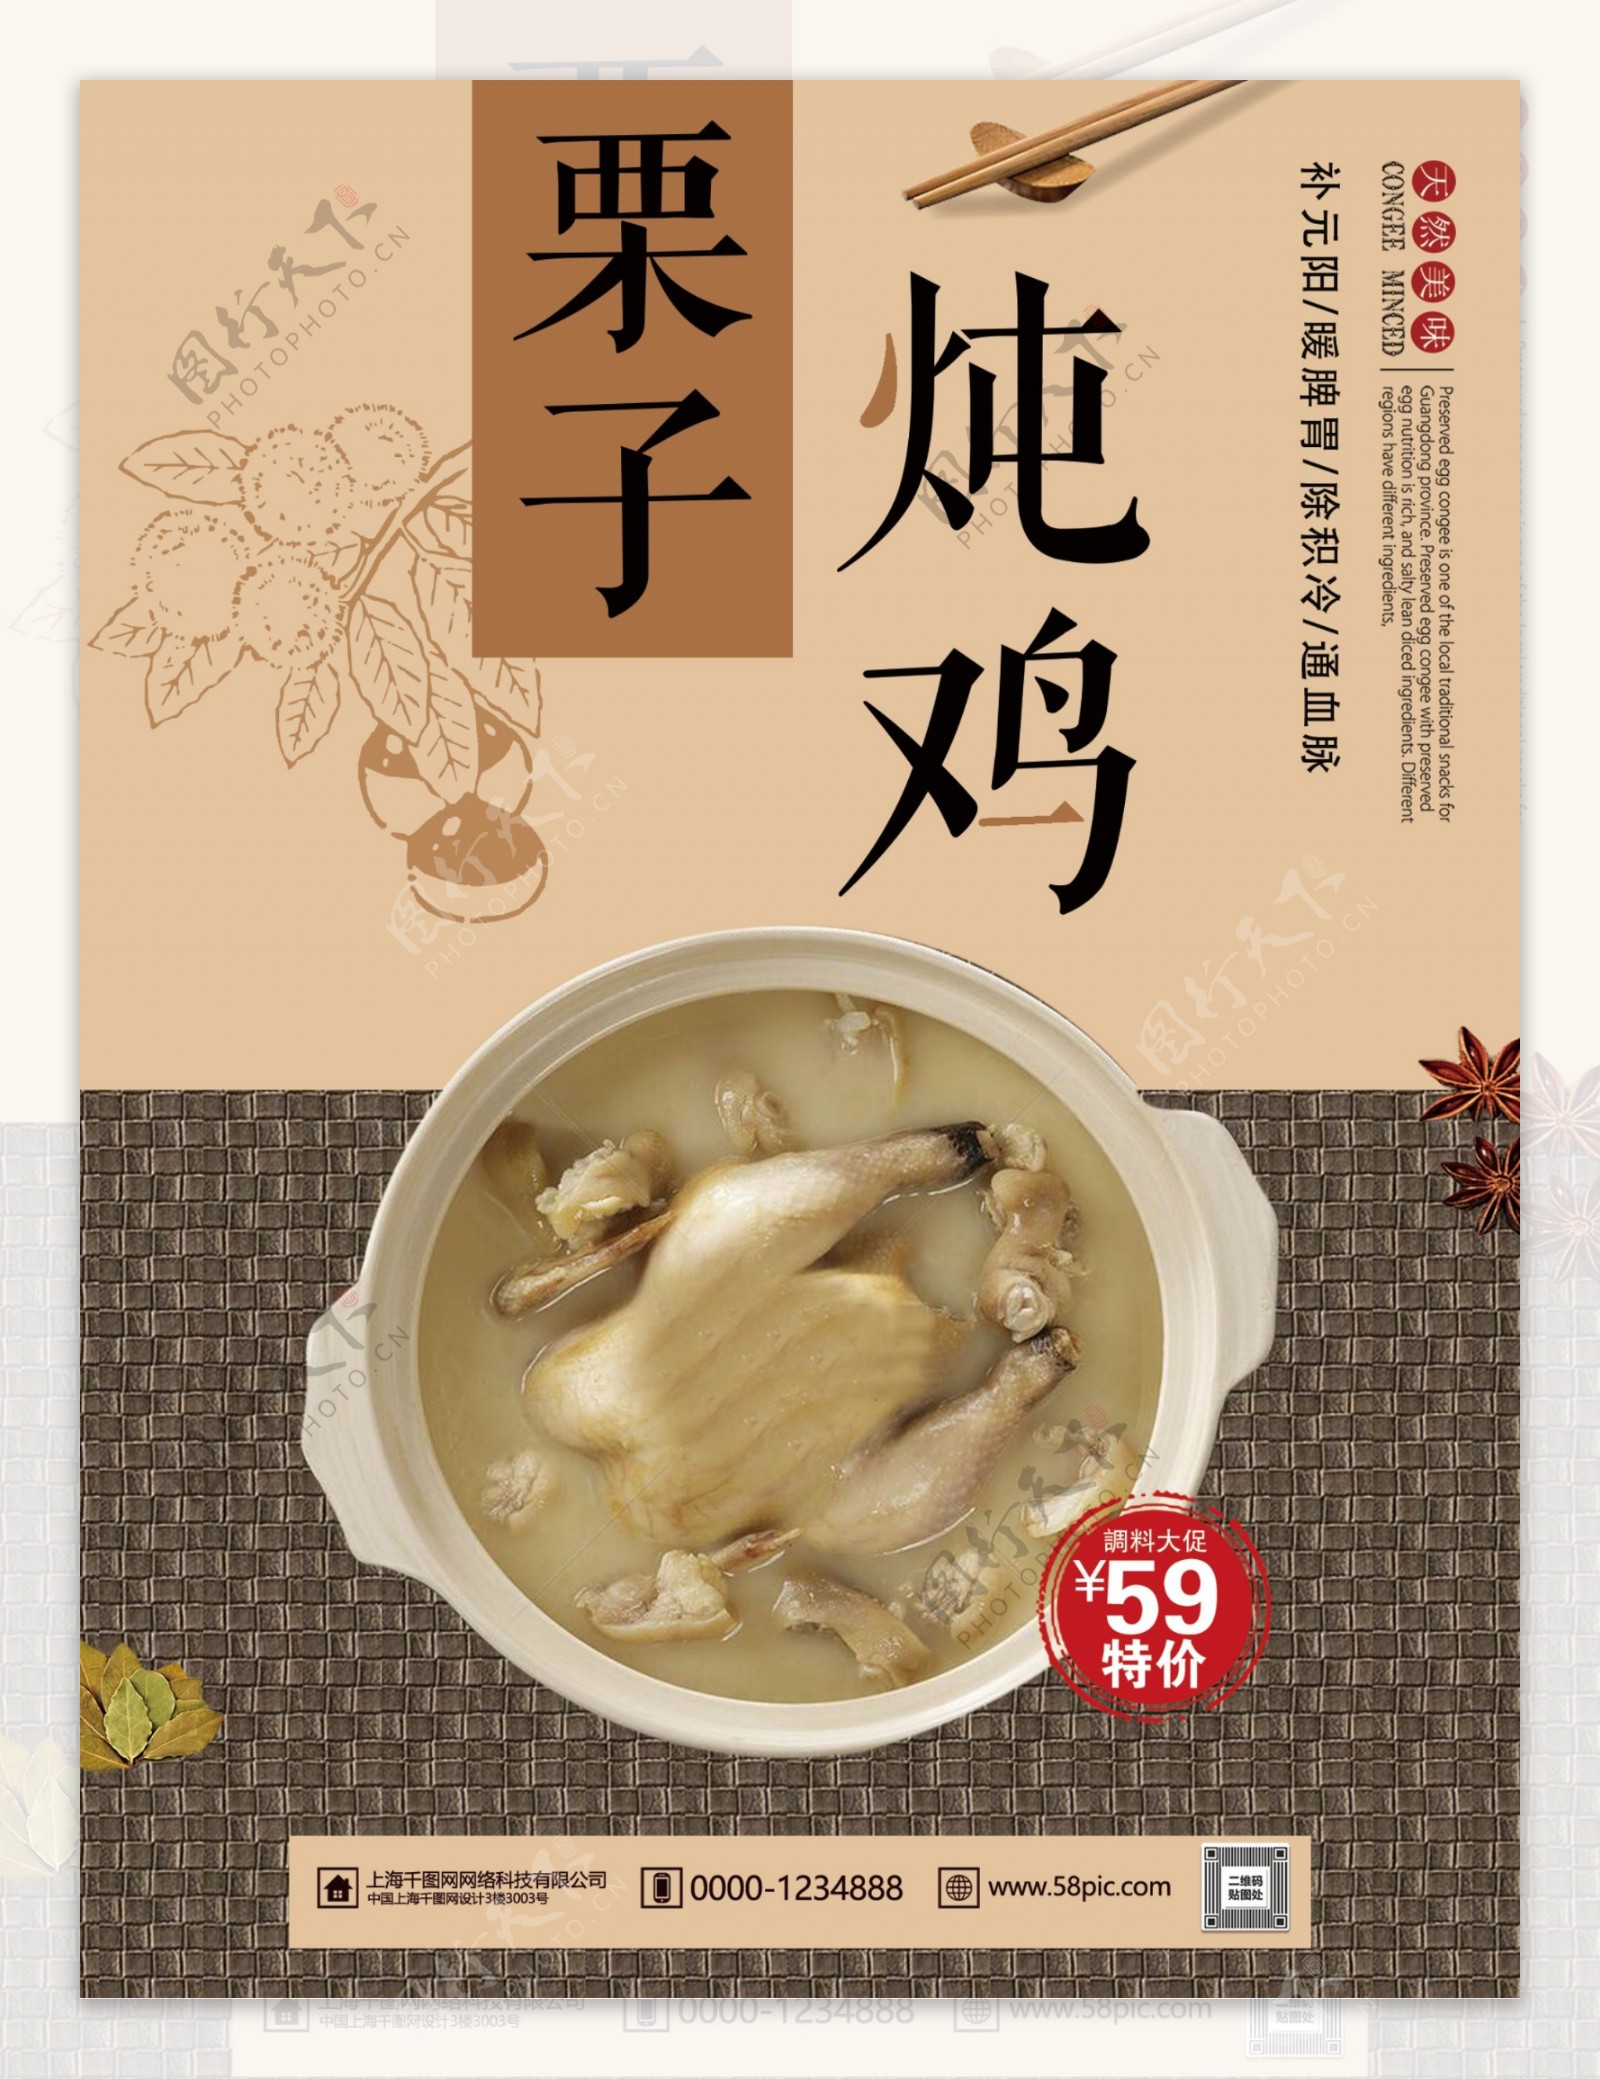 简约栗子炖鸡特色美食宣传海报